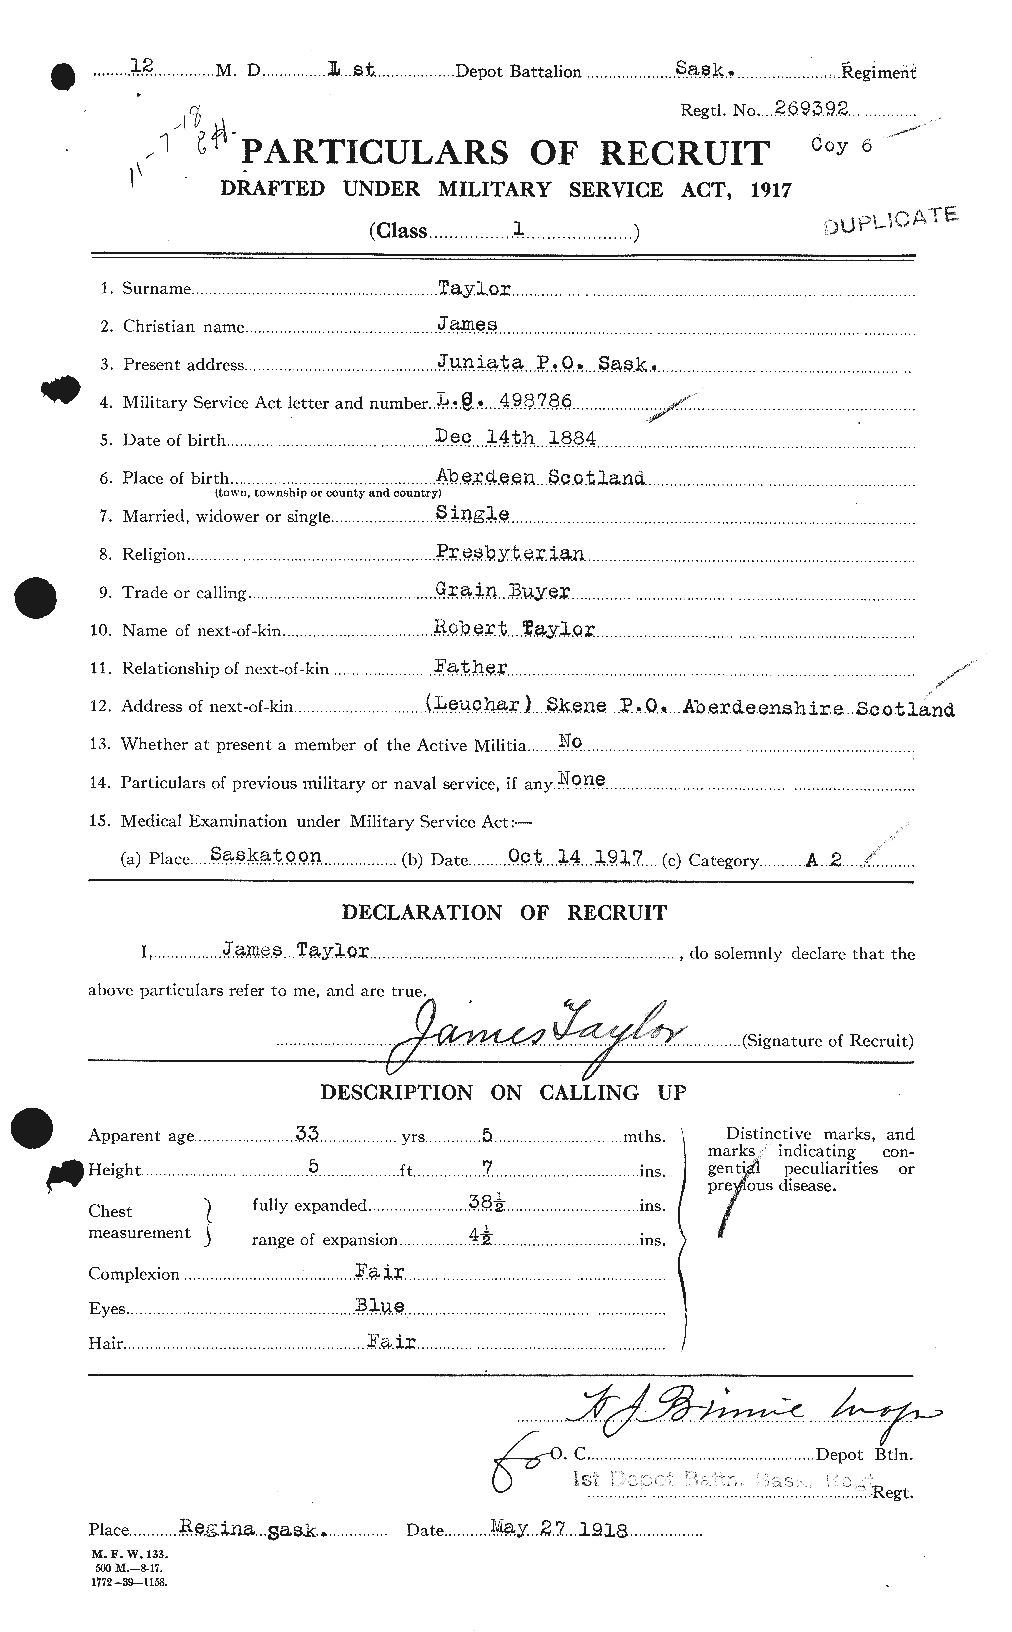 Dossiers du Personnel de la Première Guerre mondiale - CEC 626678a